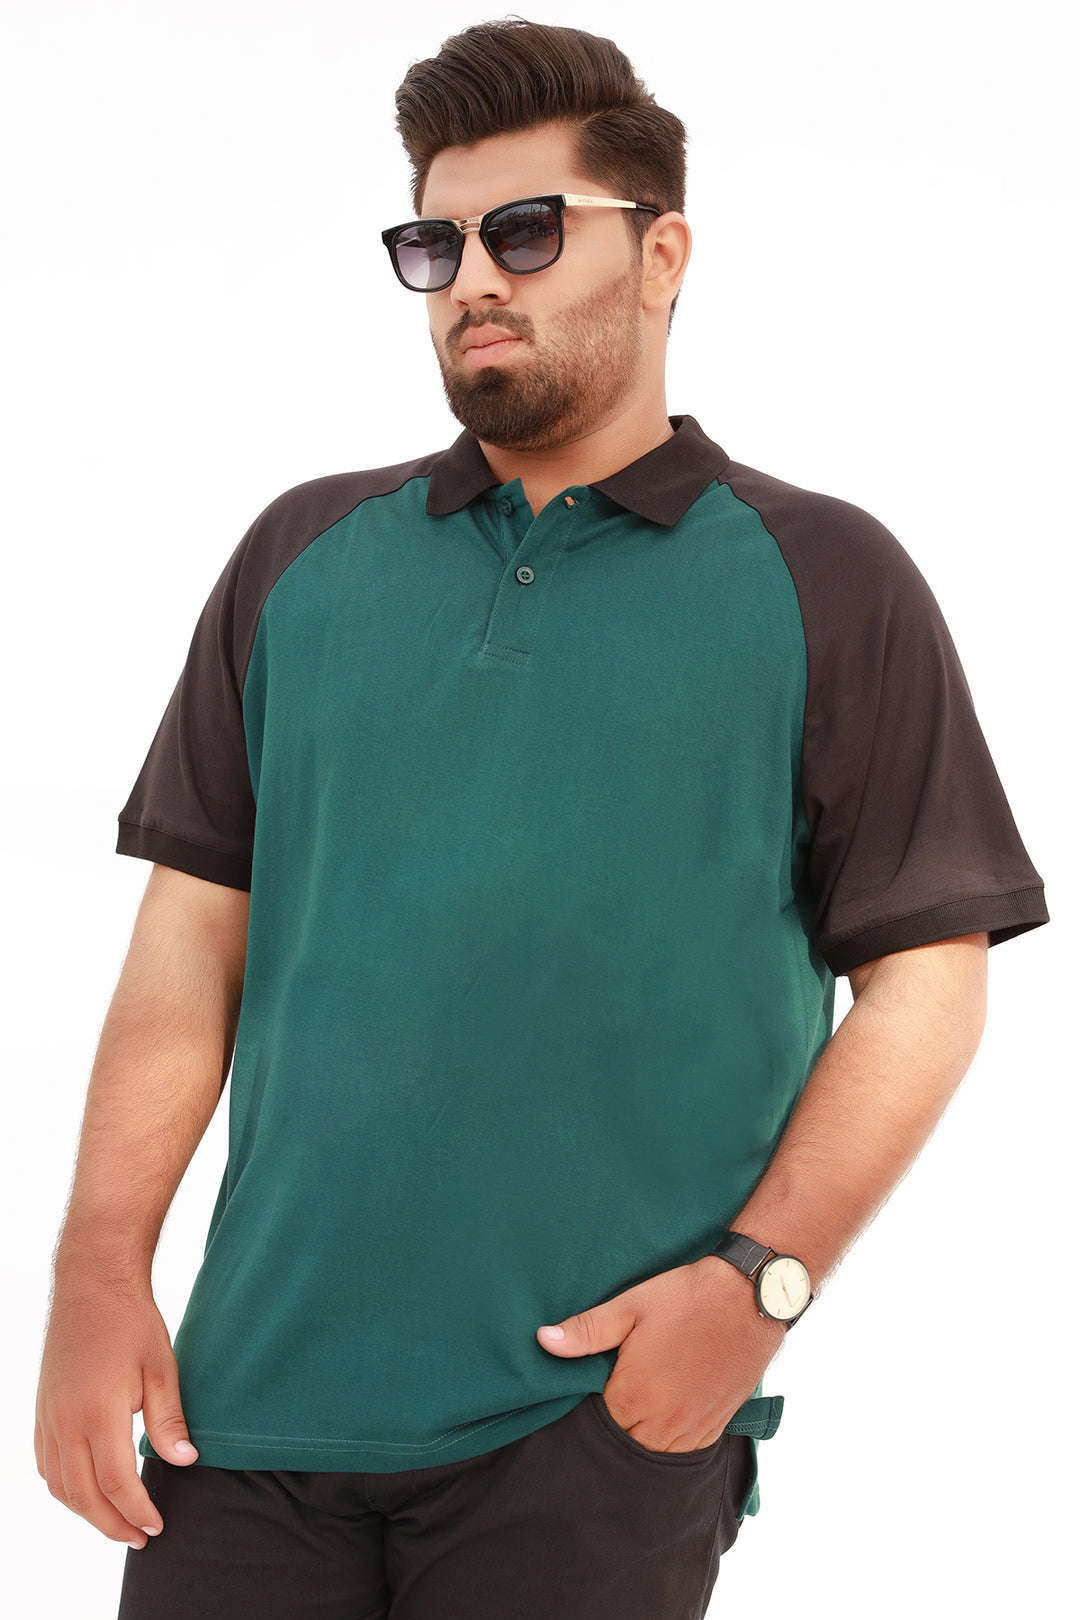 Teal & Black Raglan Polo Shirt (Plus Size) - S22 - MP0117P